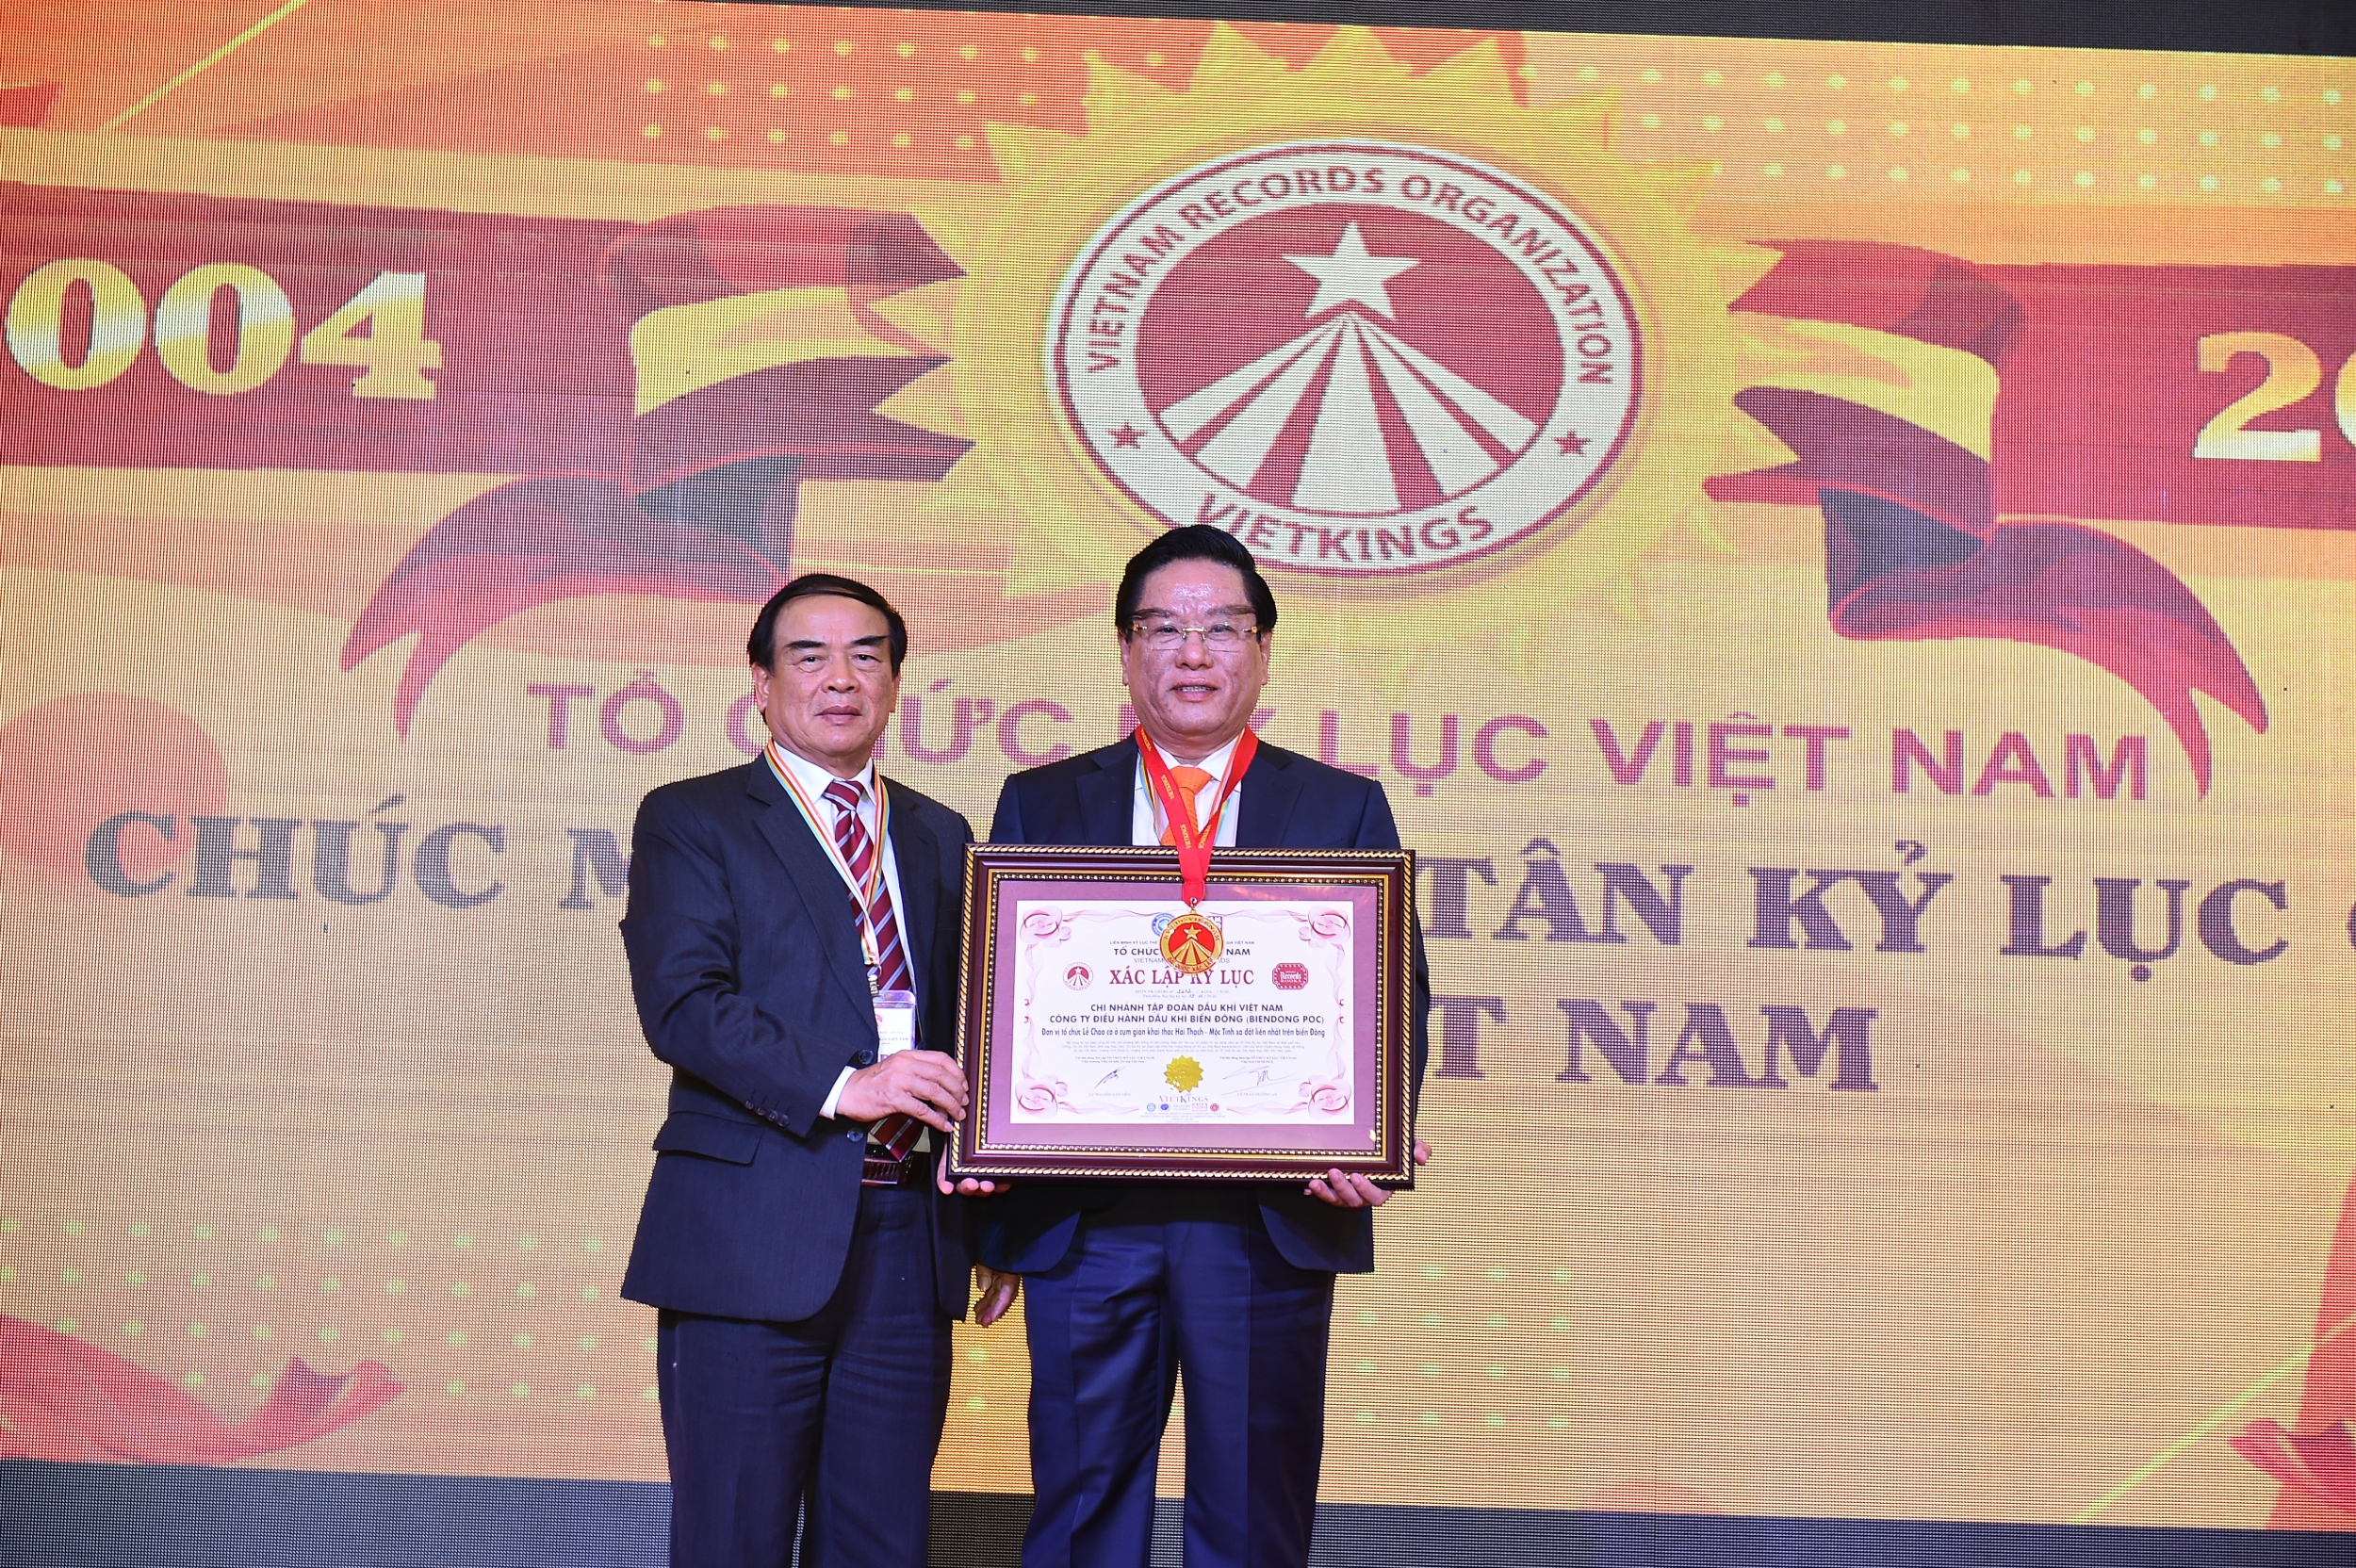 BIENDONG POC nhận Kỷ lục Việt Nam “Đơn vị tổ chức lễ Chào cờ ở cụm giàn khai thác Hải Thạch – Mộc Tinh xa đất liền nhất trên Biền Đông”